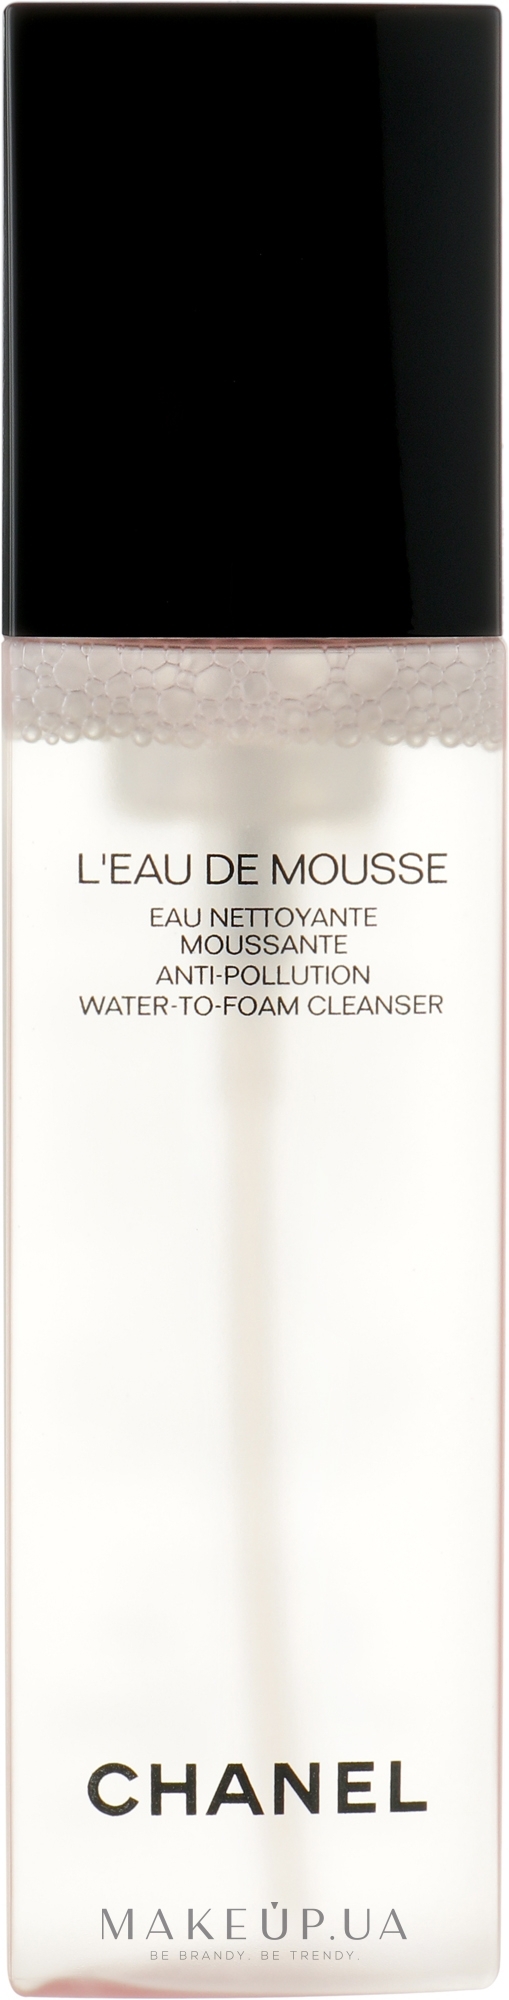 Chanel L'eau De Mousse Anti-pollution Foam Cleanser (тестер